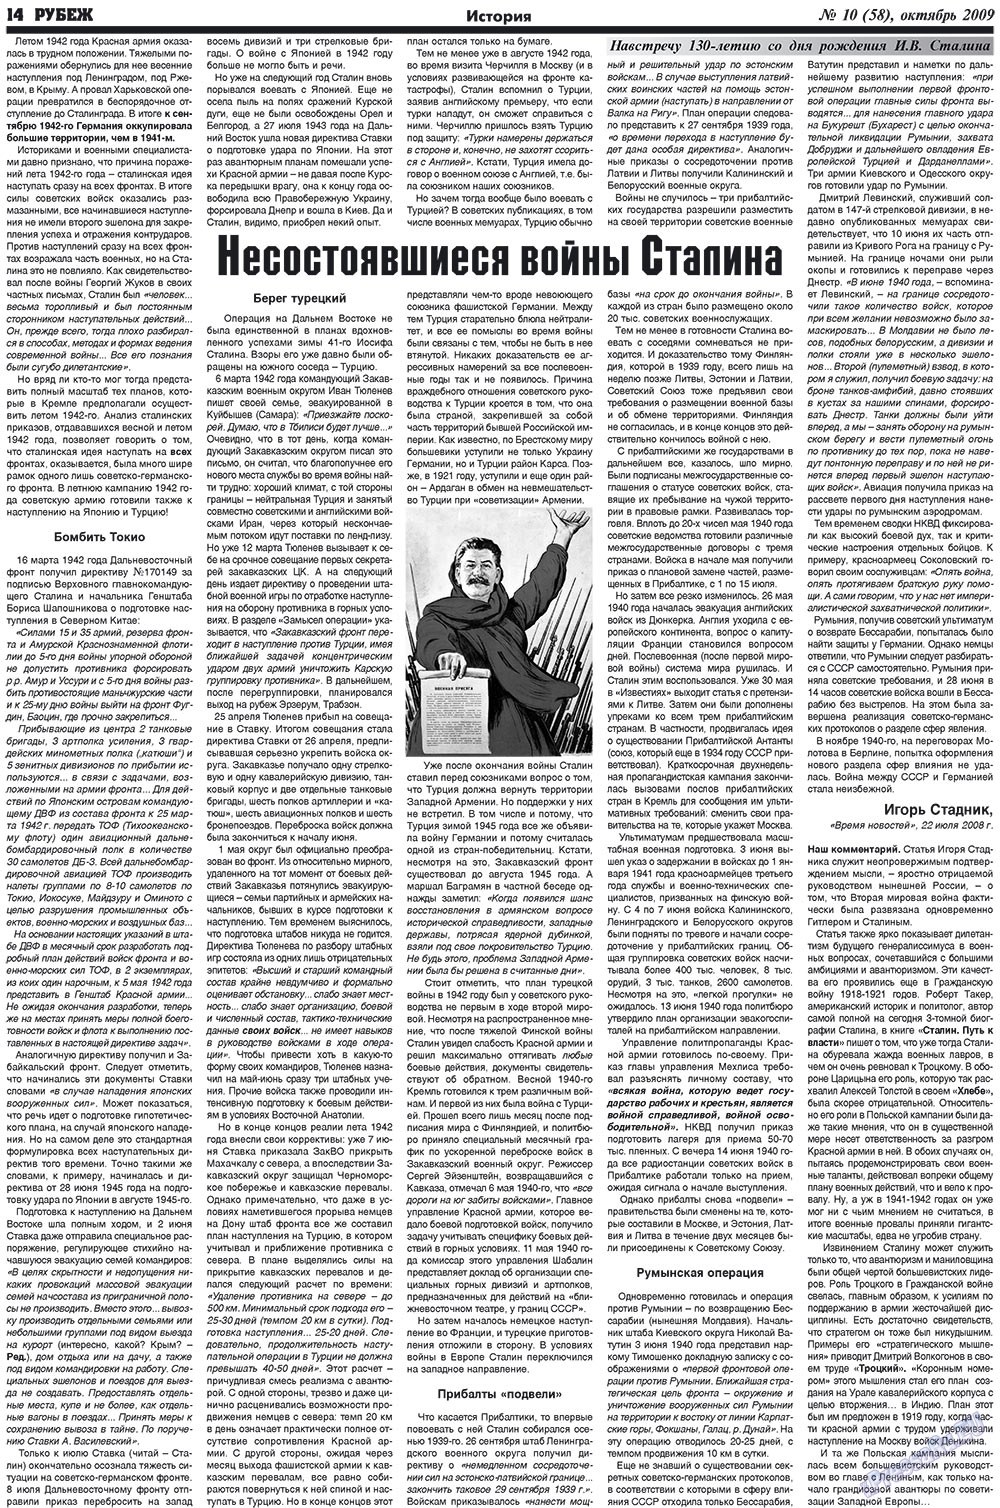 Рубеж (газета). 2009 год, номер 10, стр. 14